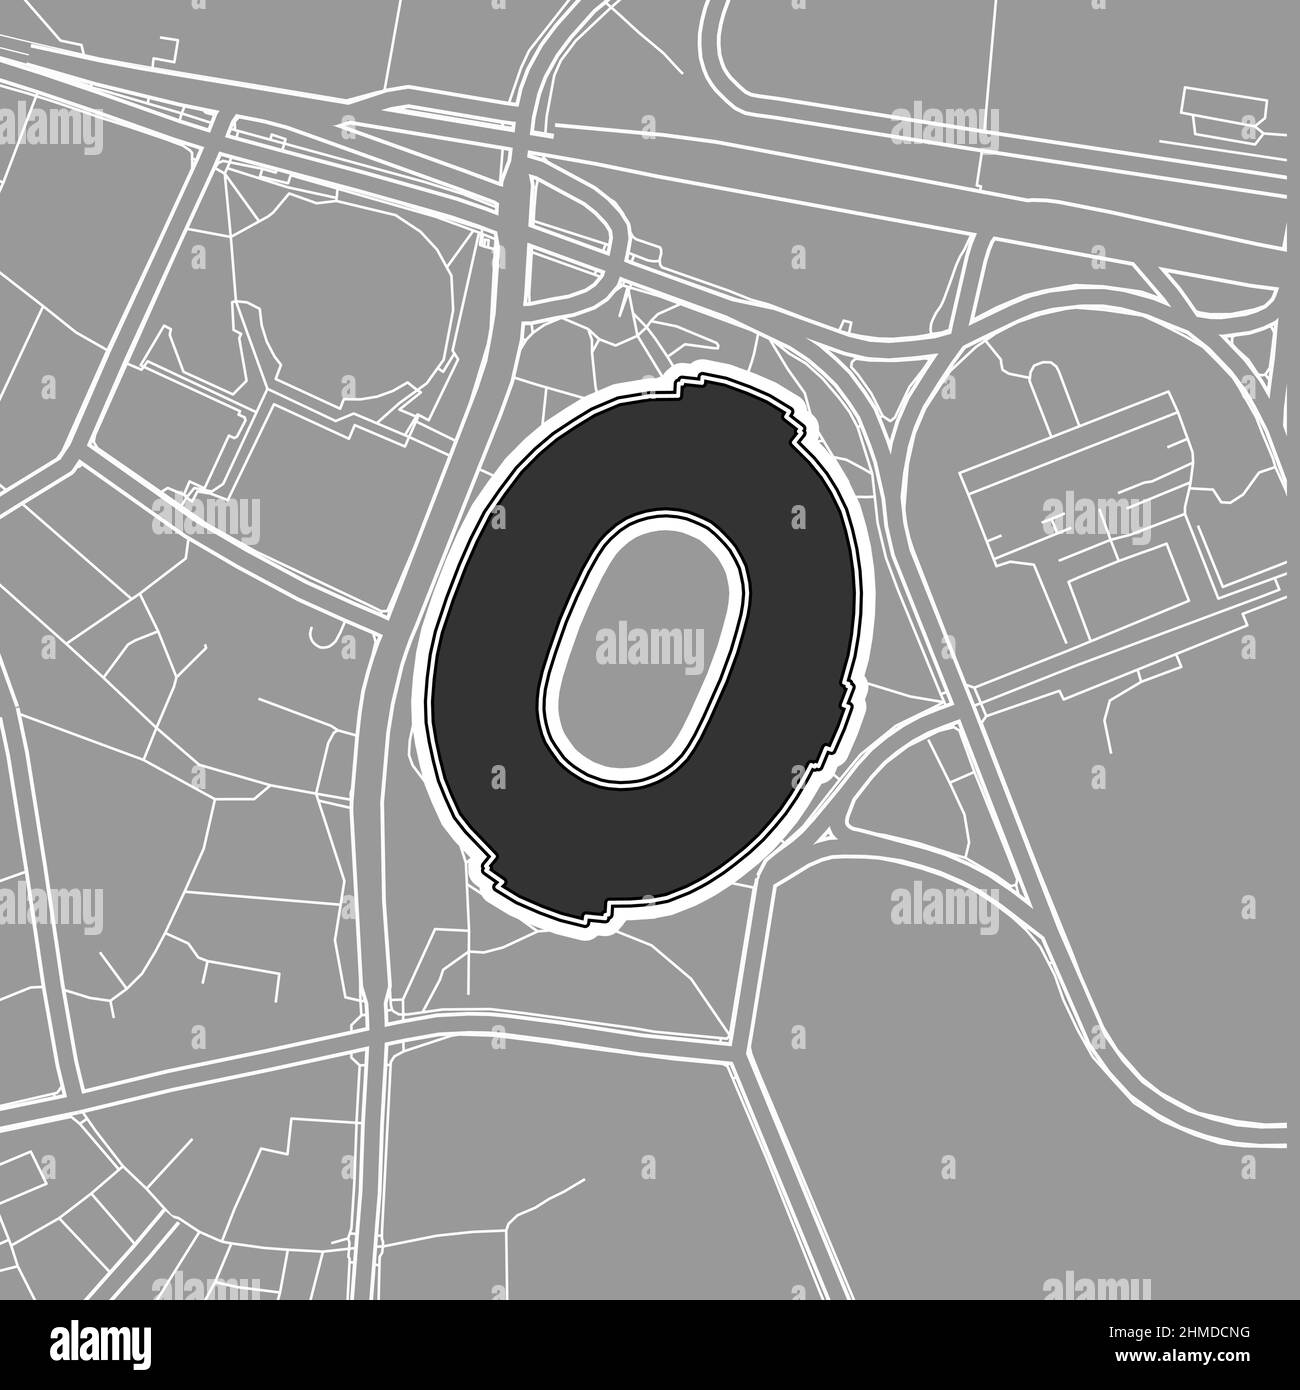 Tokio, MLB-Stadion, Vektorkarte. Die Baseballstatiumkarte wurde mit weißen Flächen und Linien für Hauptstraßen, Nebenstraßen, gezeichnet. Stock Vektor